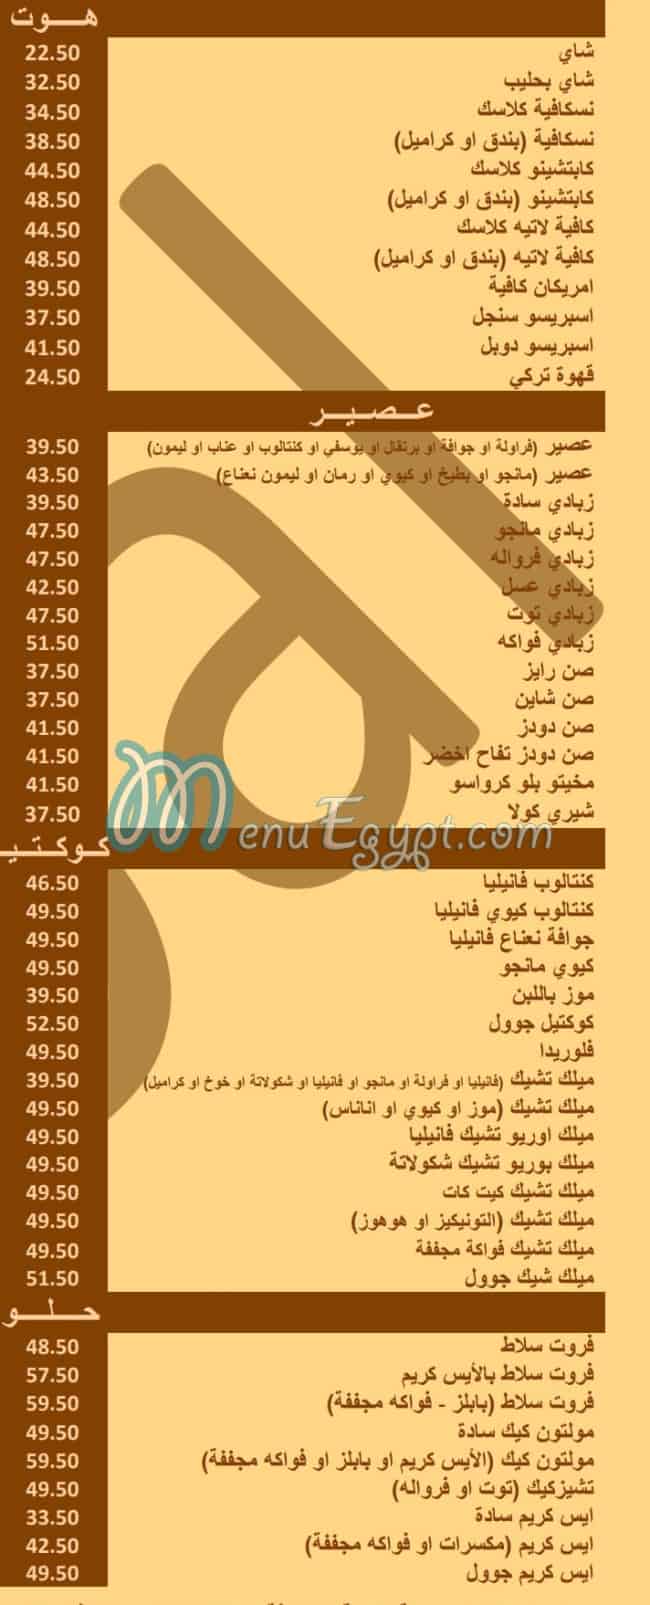 Goal menu Egypt 1